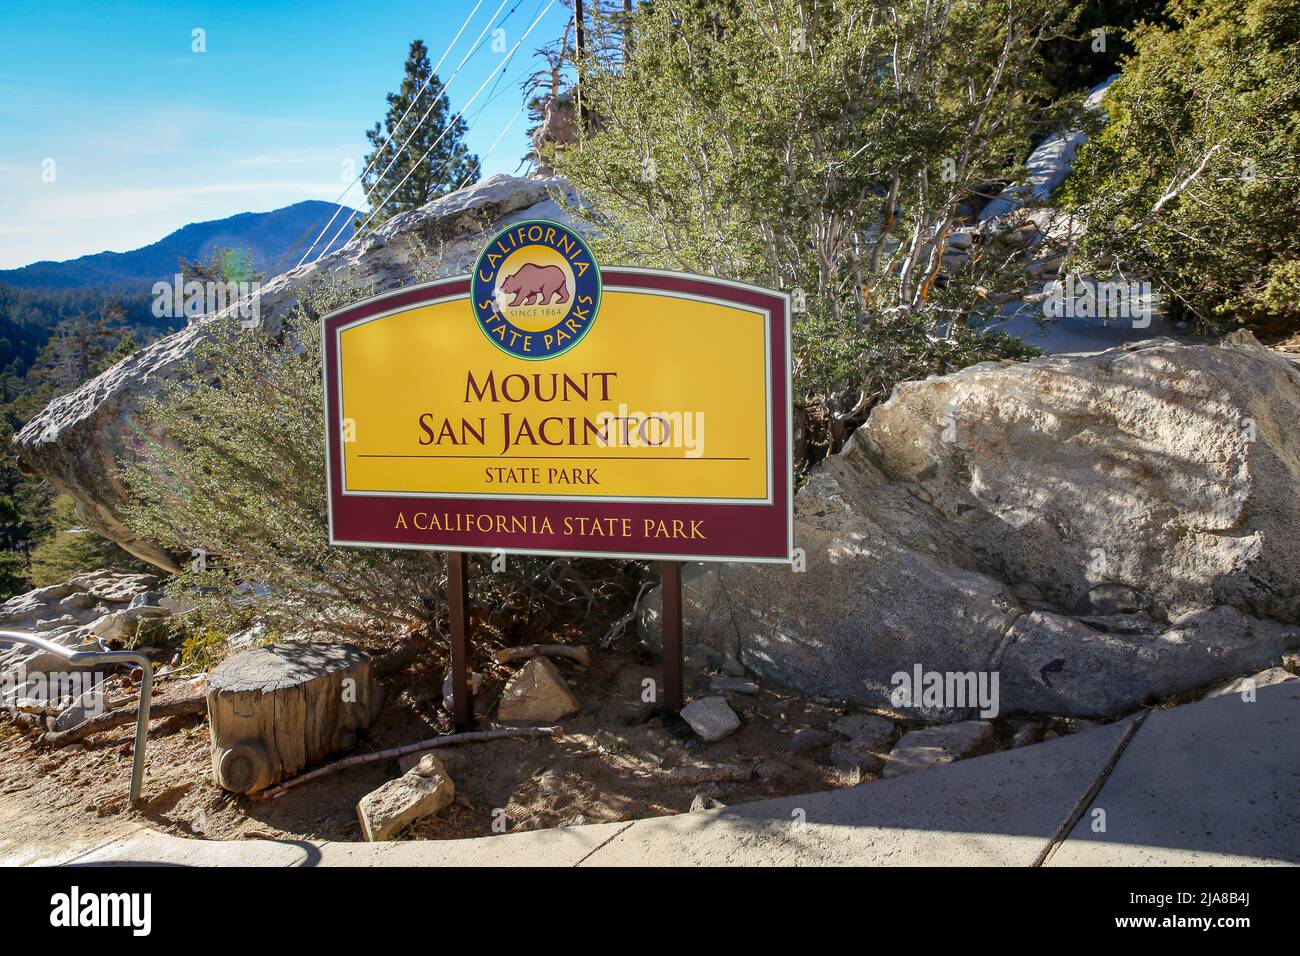 Entrée au mont San Jacinto, panneau du parc national de Californie. Panneaux d'affichage d'informations, Palm Springs, CA, États-Unis Banque D'Images